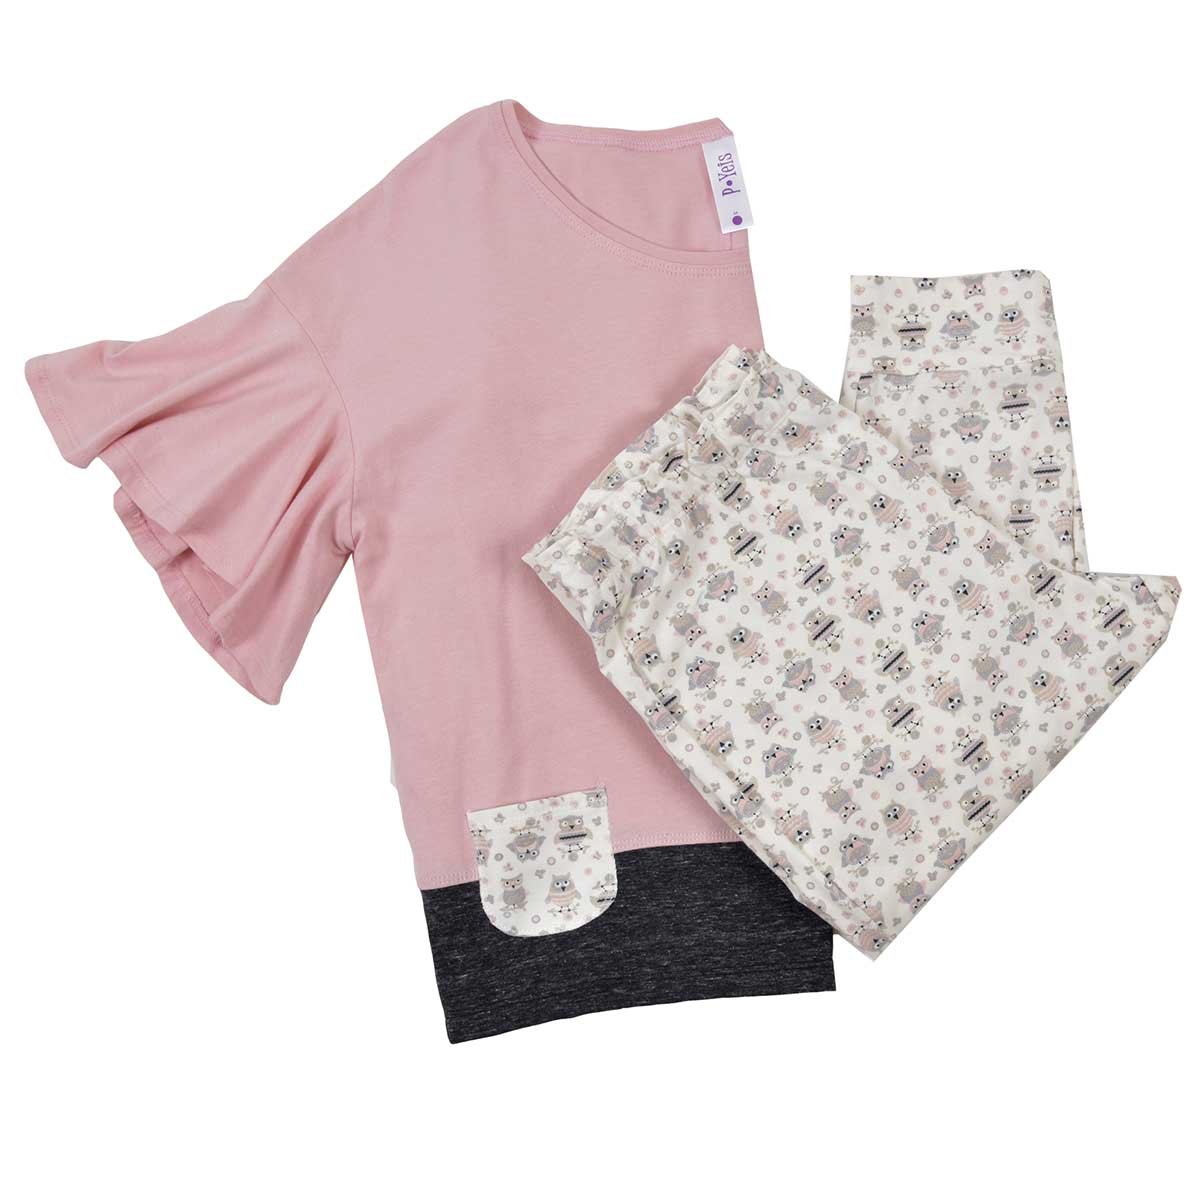 Pijama para Dama Blusa Combinado Y Pantalón P Yeis